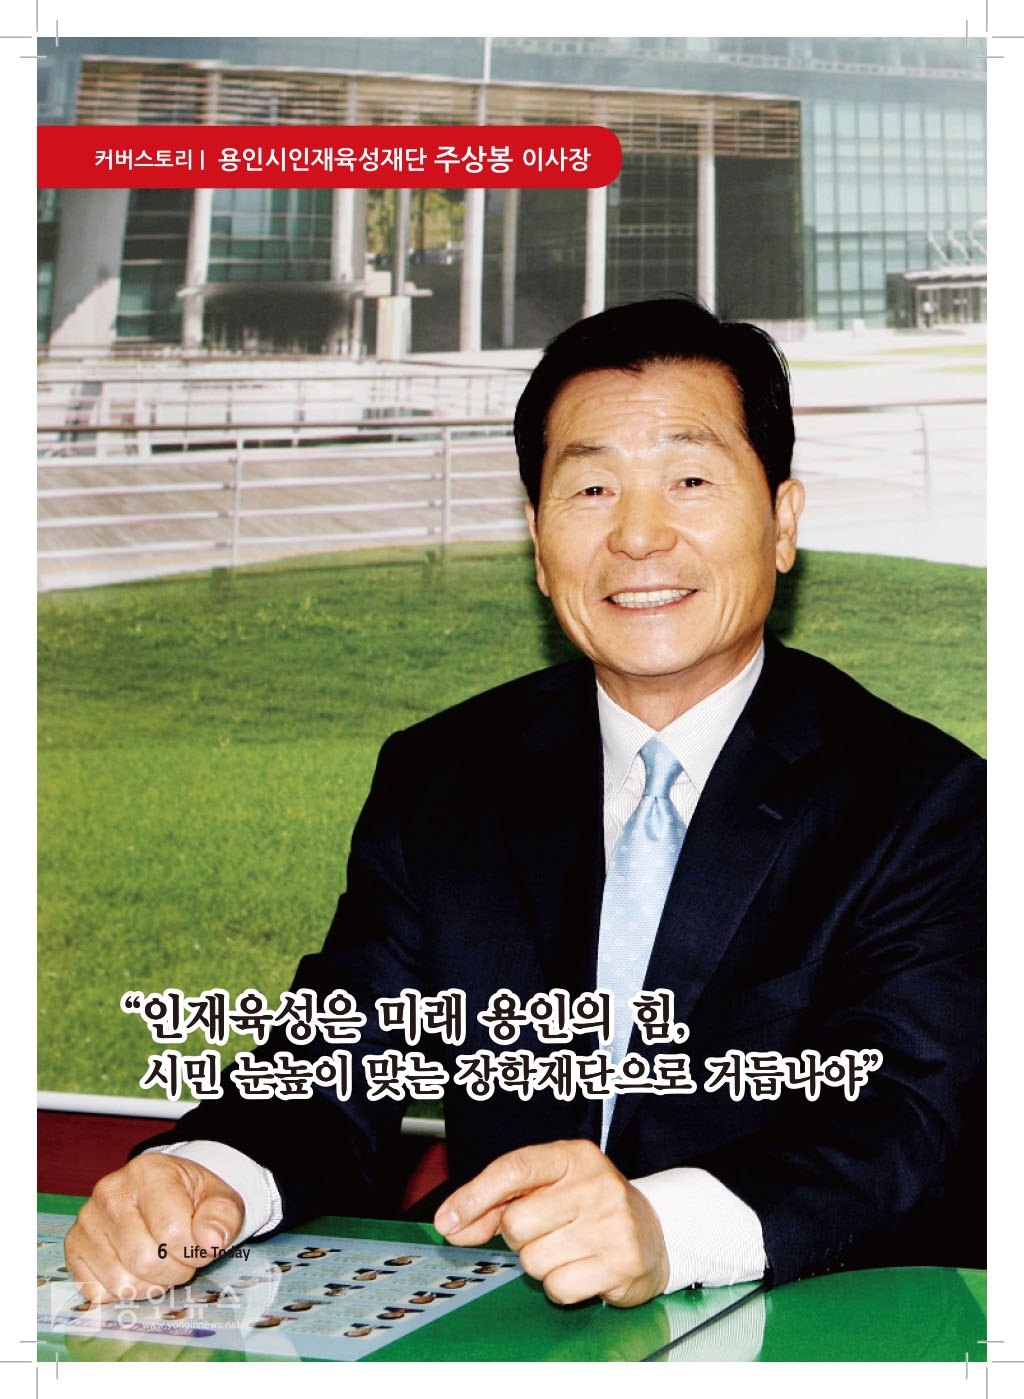 커버스토리-용인시인재육성재단 주상봉 이사장 (19년 2월)